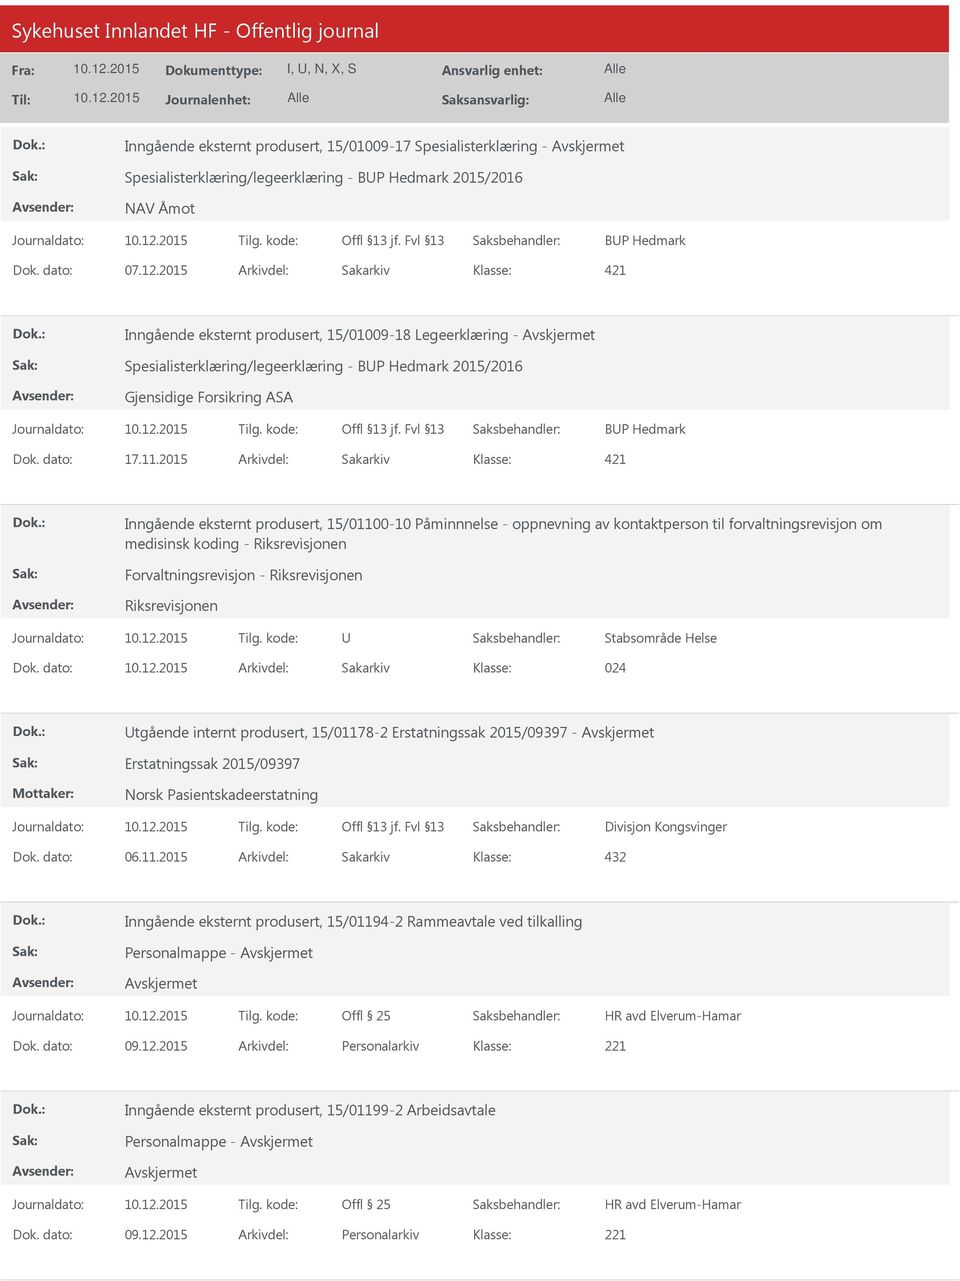 2015 Arkivdel: Sakarkiv 421 Inngående eksternt produsert, 15/01100-10 Påminnnelse - oppnevning av kontaktperson til forvaltningsrevisjon om medisinsk koding - Riksrevisjonen Forvaltningsrevisjon -